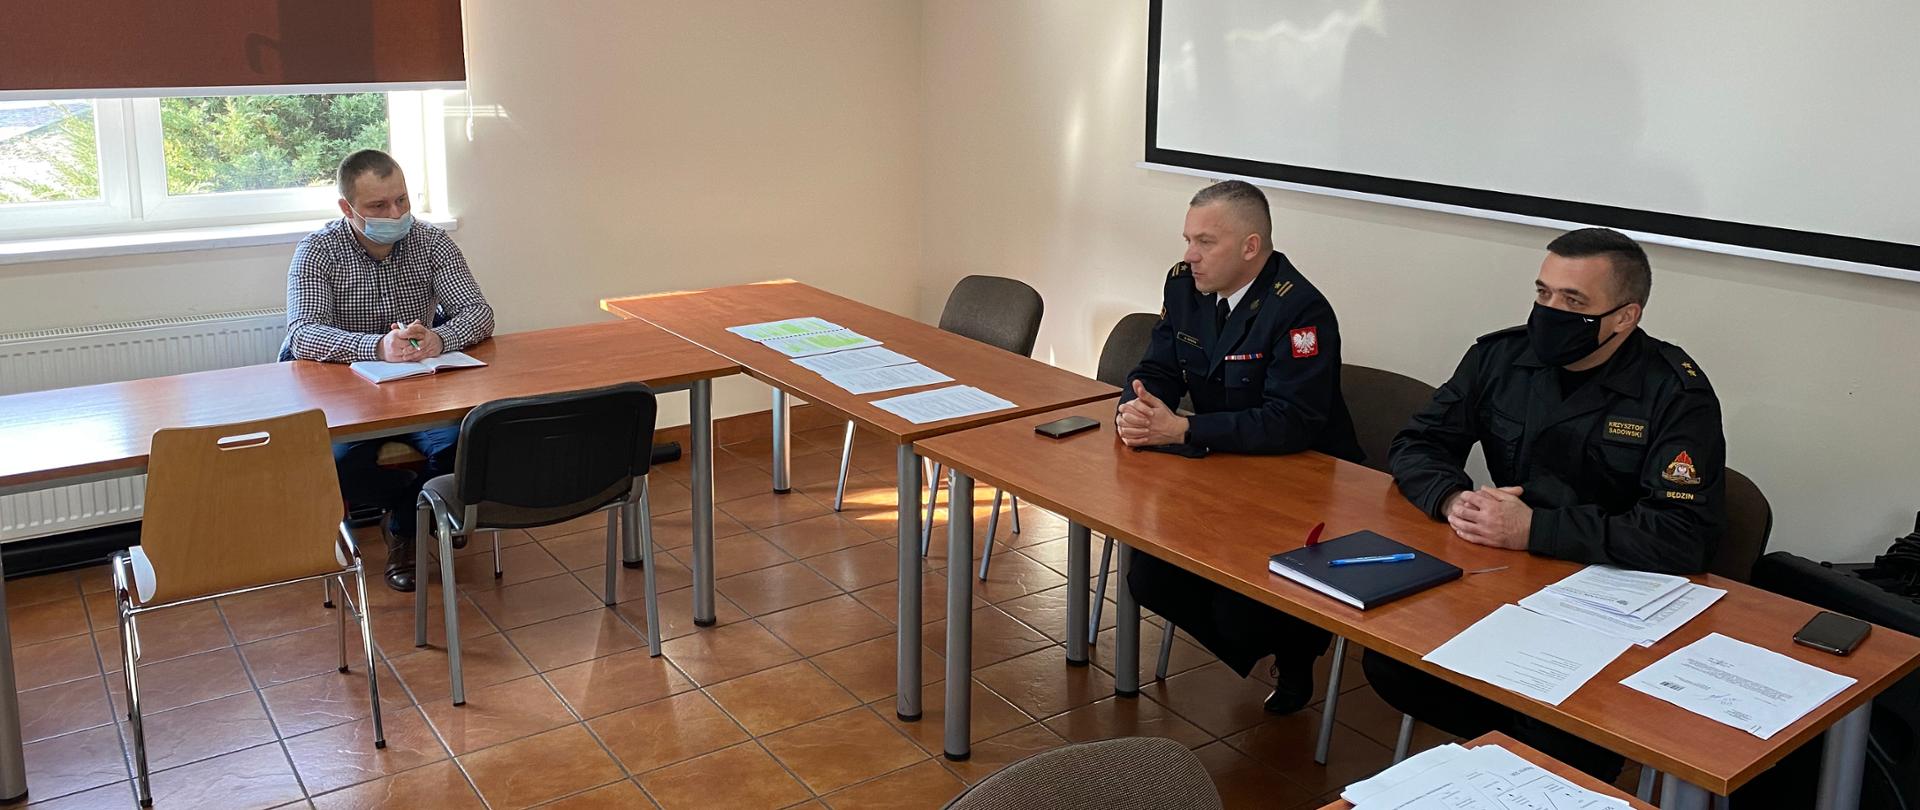 Na zdjęciu widzimy Komendanta Powiatowego PSP w Będzinie wraz z pracownikiem komendy podczas spotkania z przedstawicielami samorządów terytorialnych na sali sztabowej tut. komendy